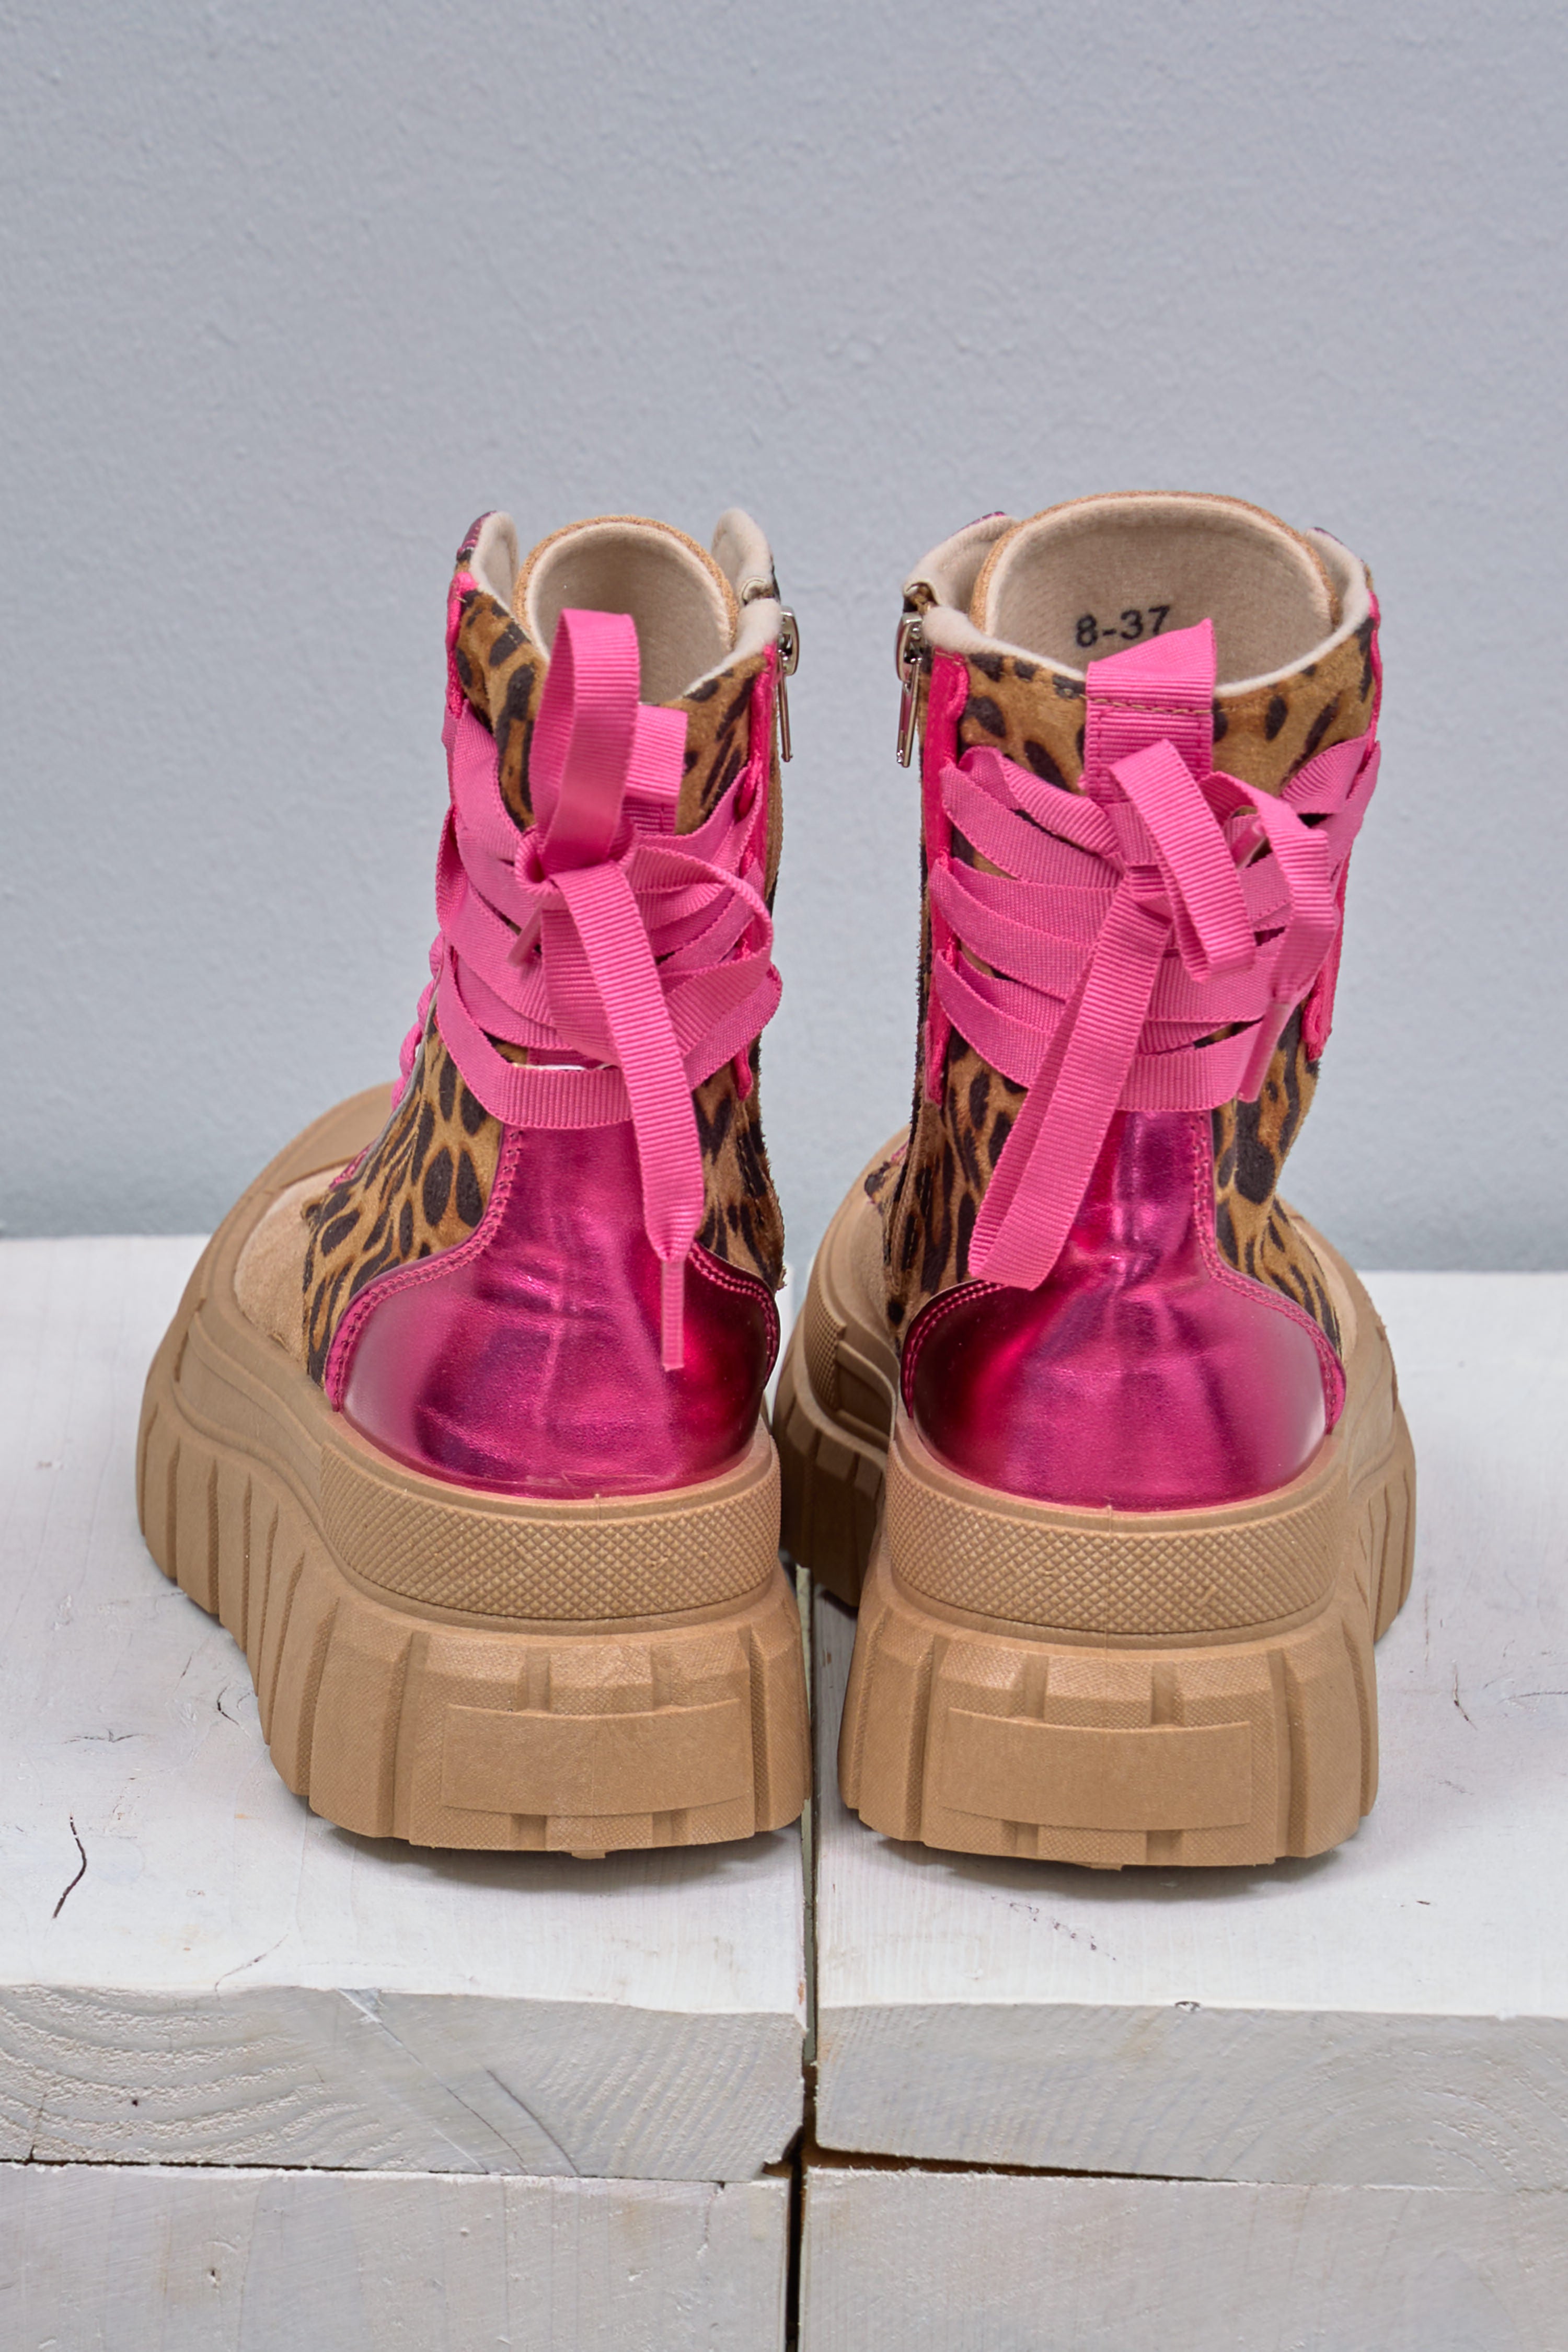 Boots, dunkelbeige-pink-leo